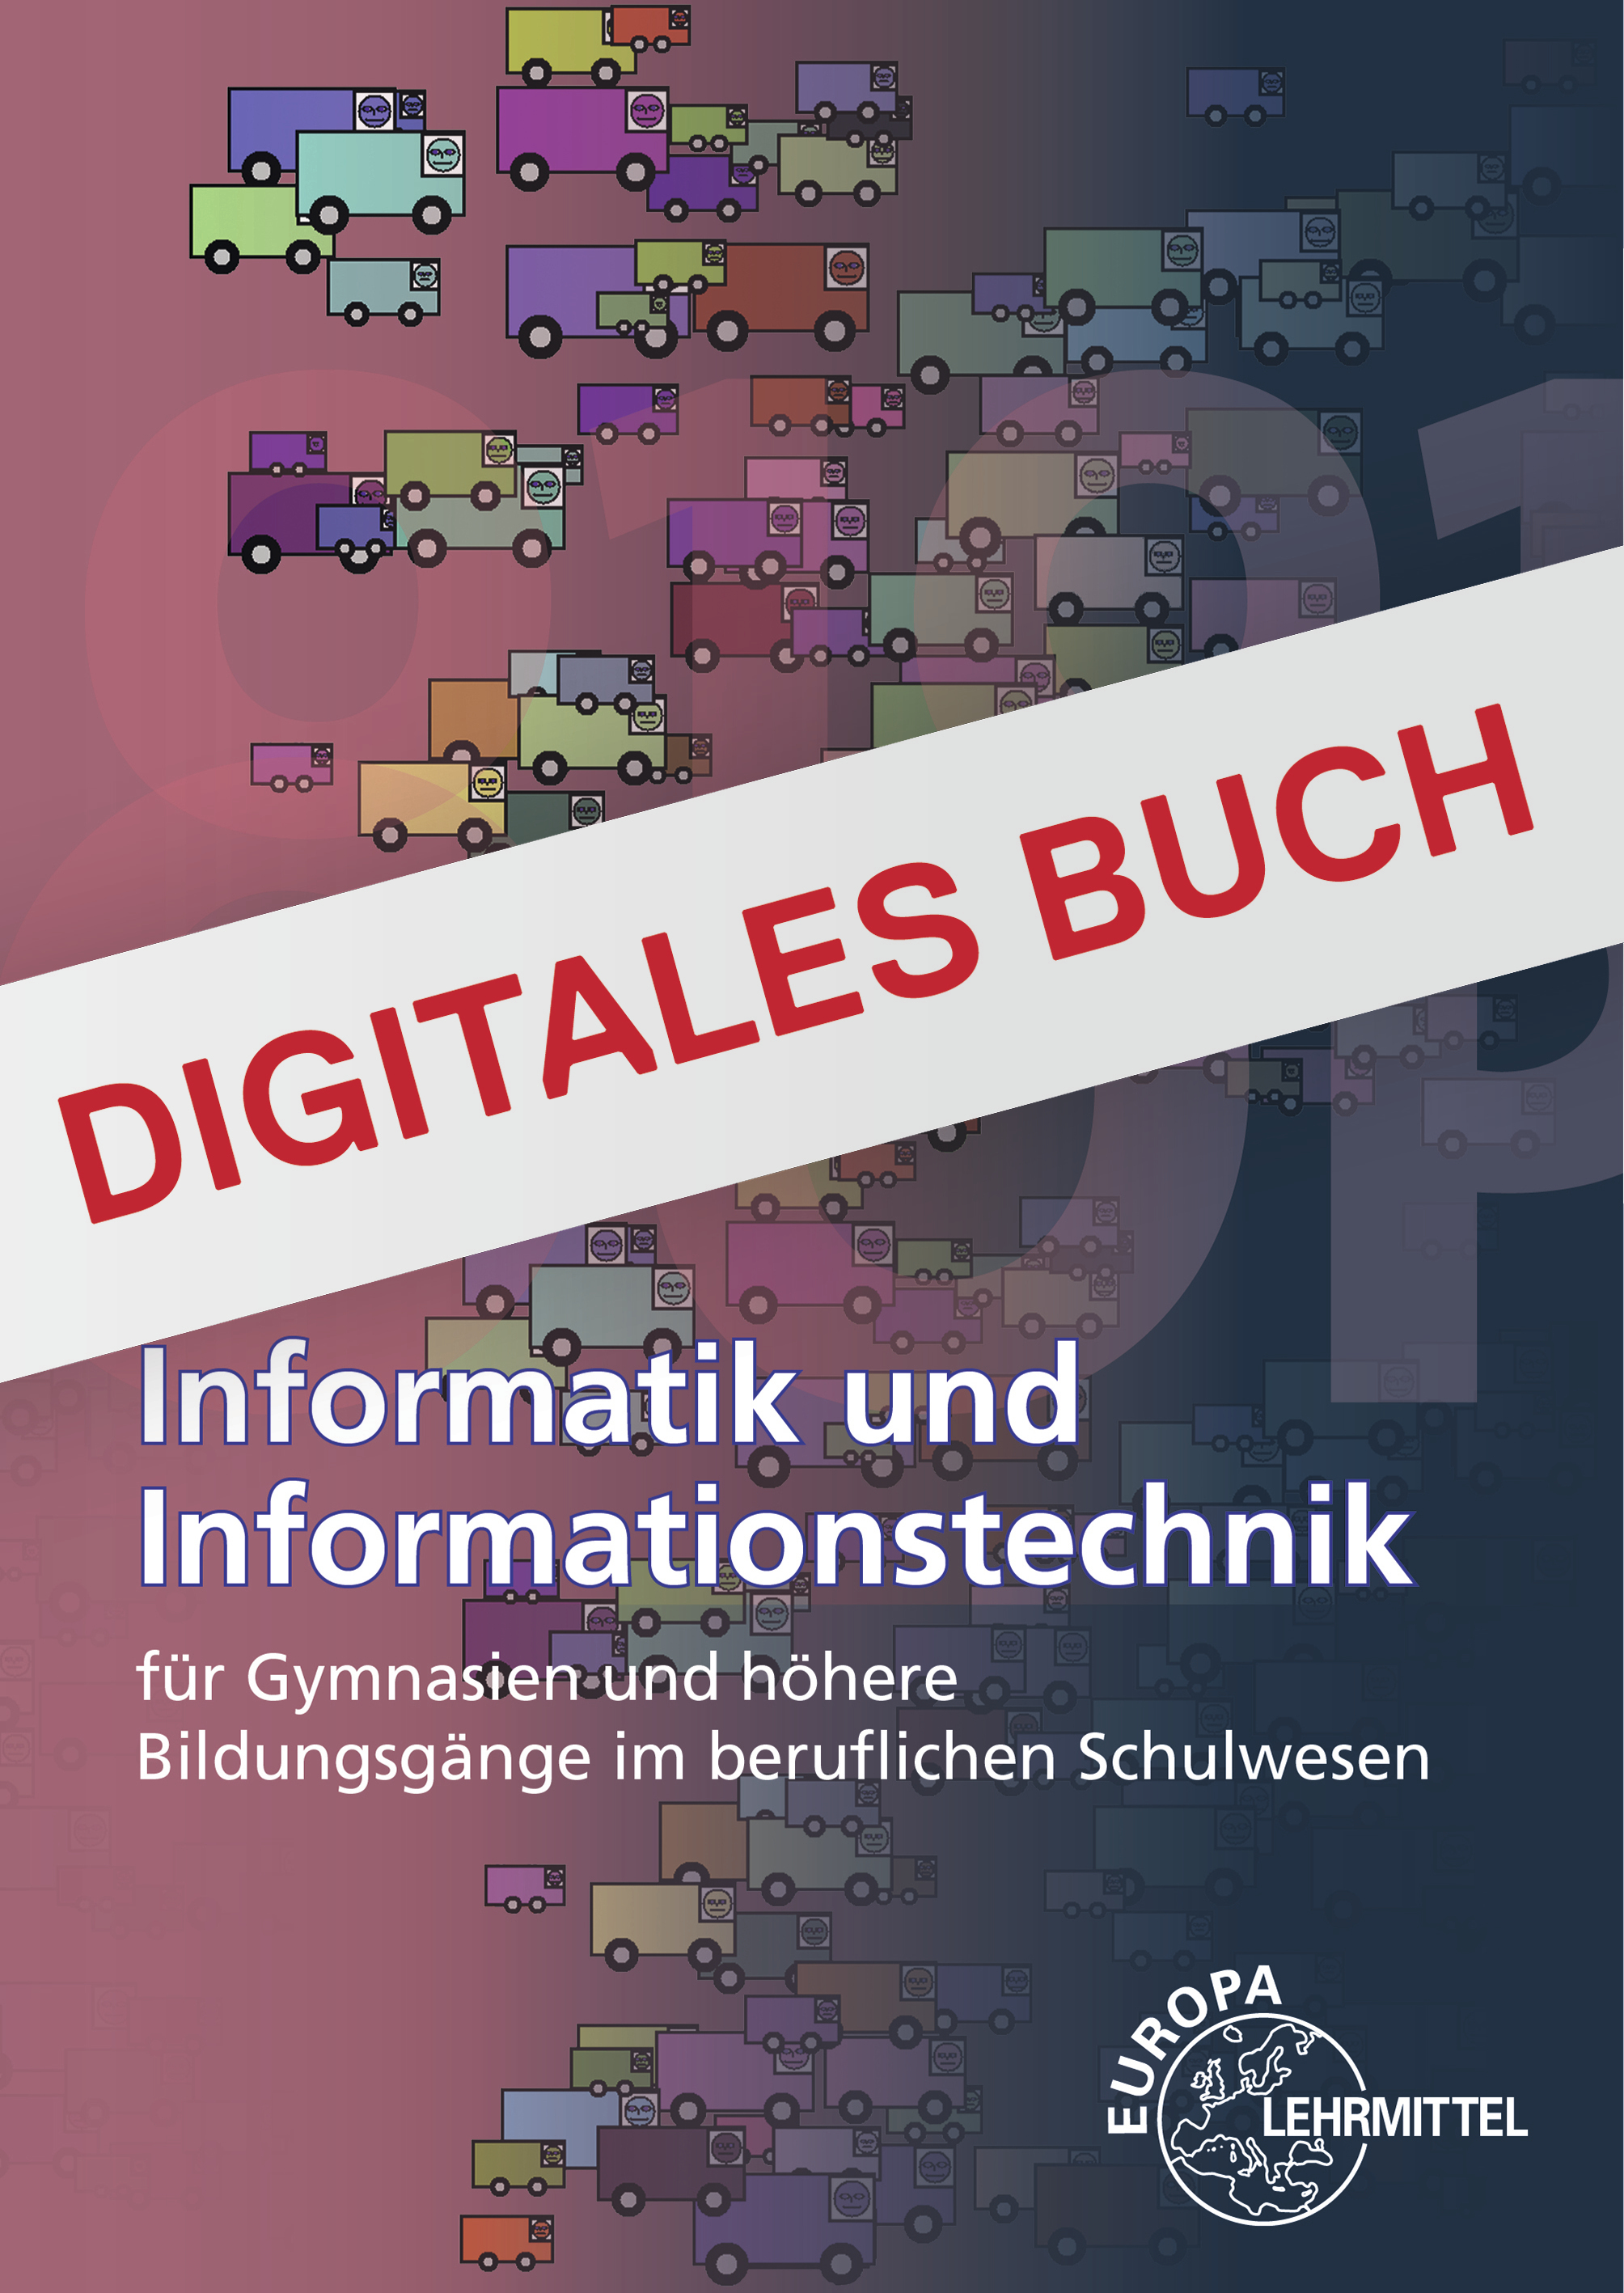 Informatik und Informationstechnik für Gymnasien - Digitales Buch